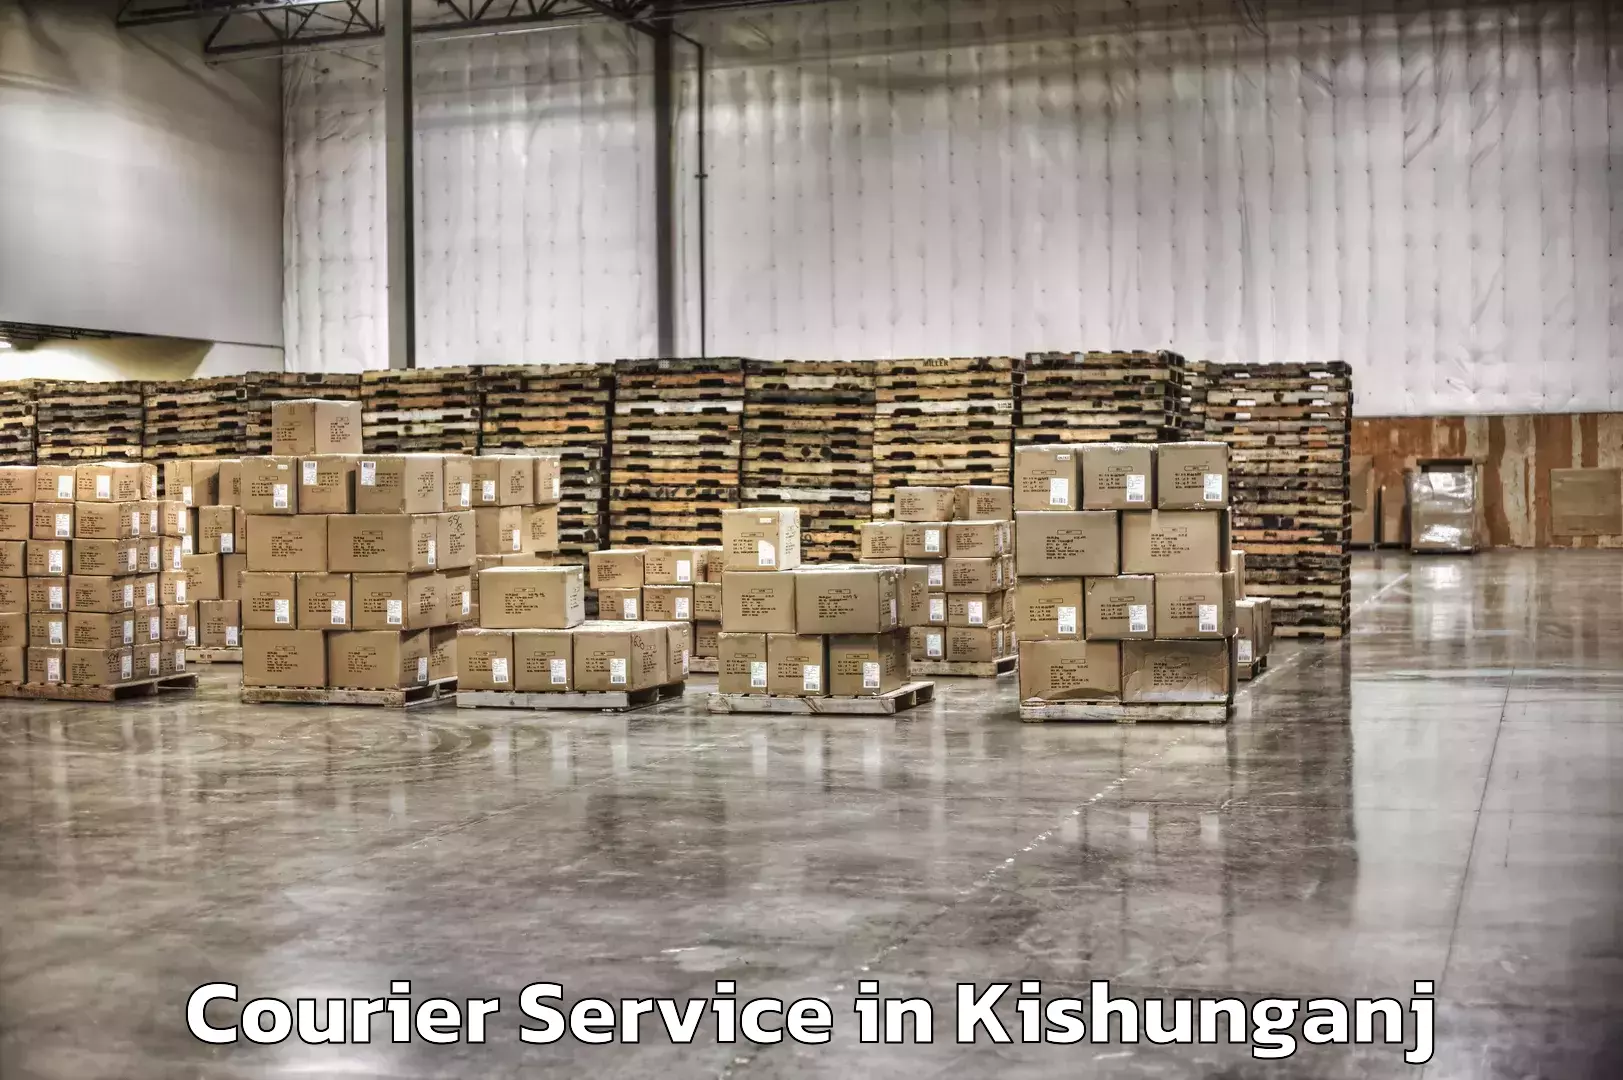 Customized shipping options in Kishunganj